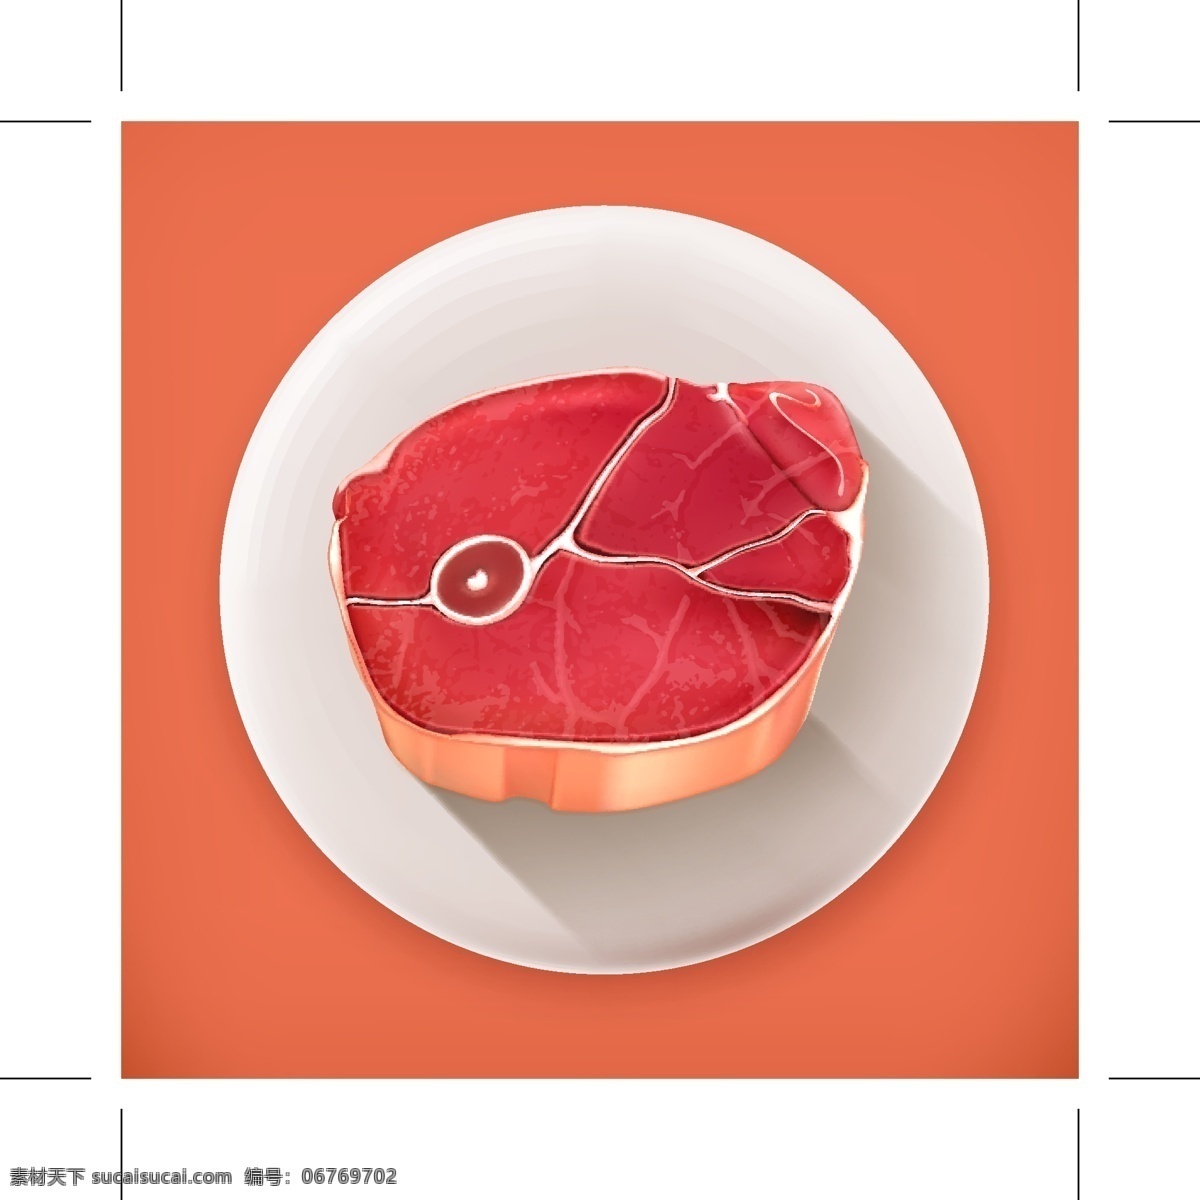 肉类食物图标 肉类 食物 图标 矢量素材 设计素材 背景素材